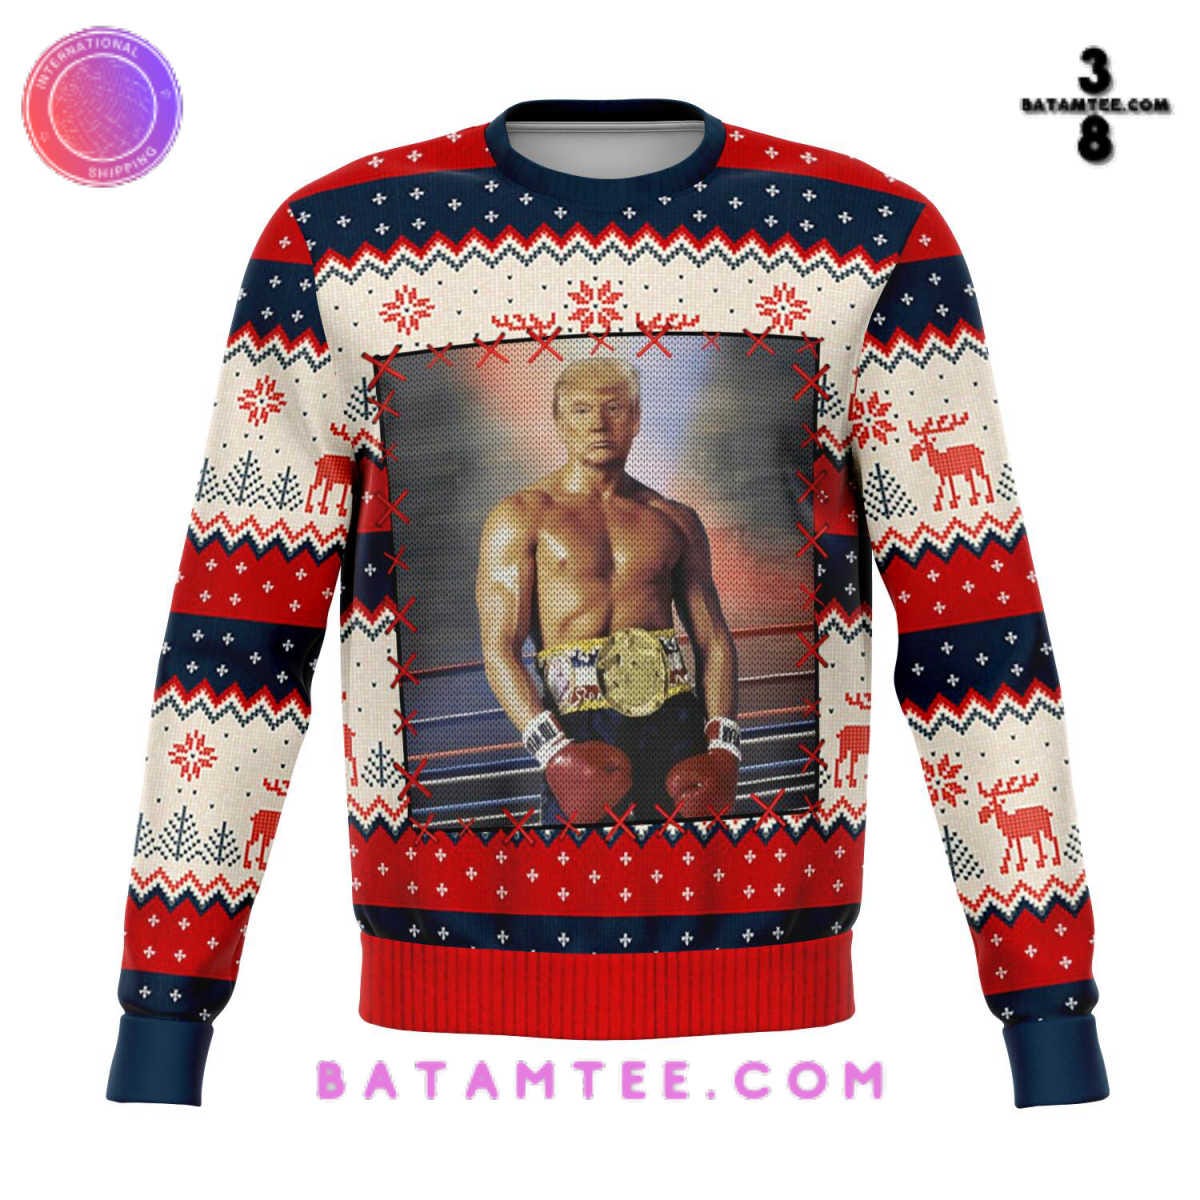 Damier Spread Printed Sweatshirt - Men - Ready-to-Wear